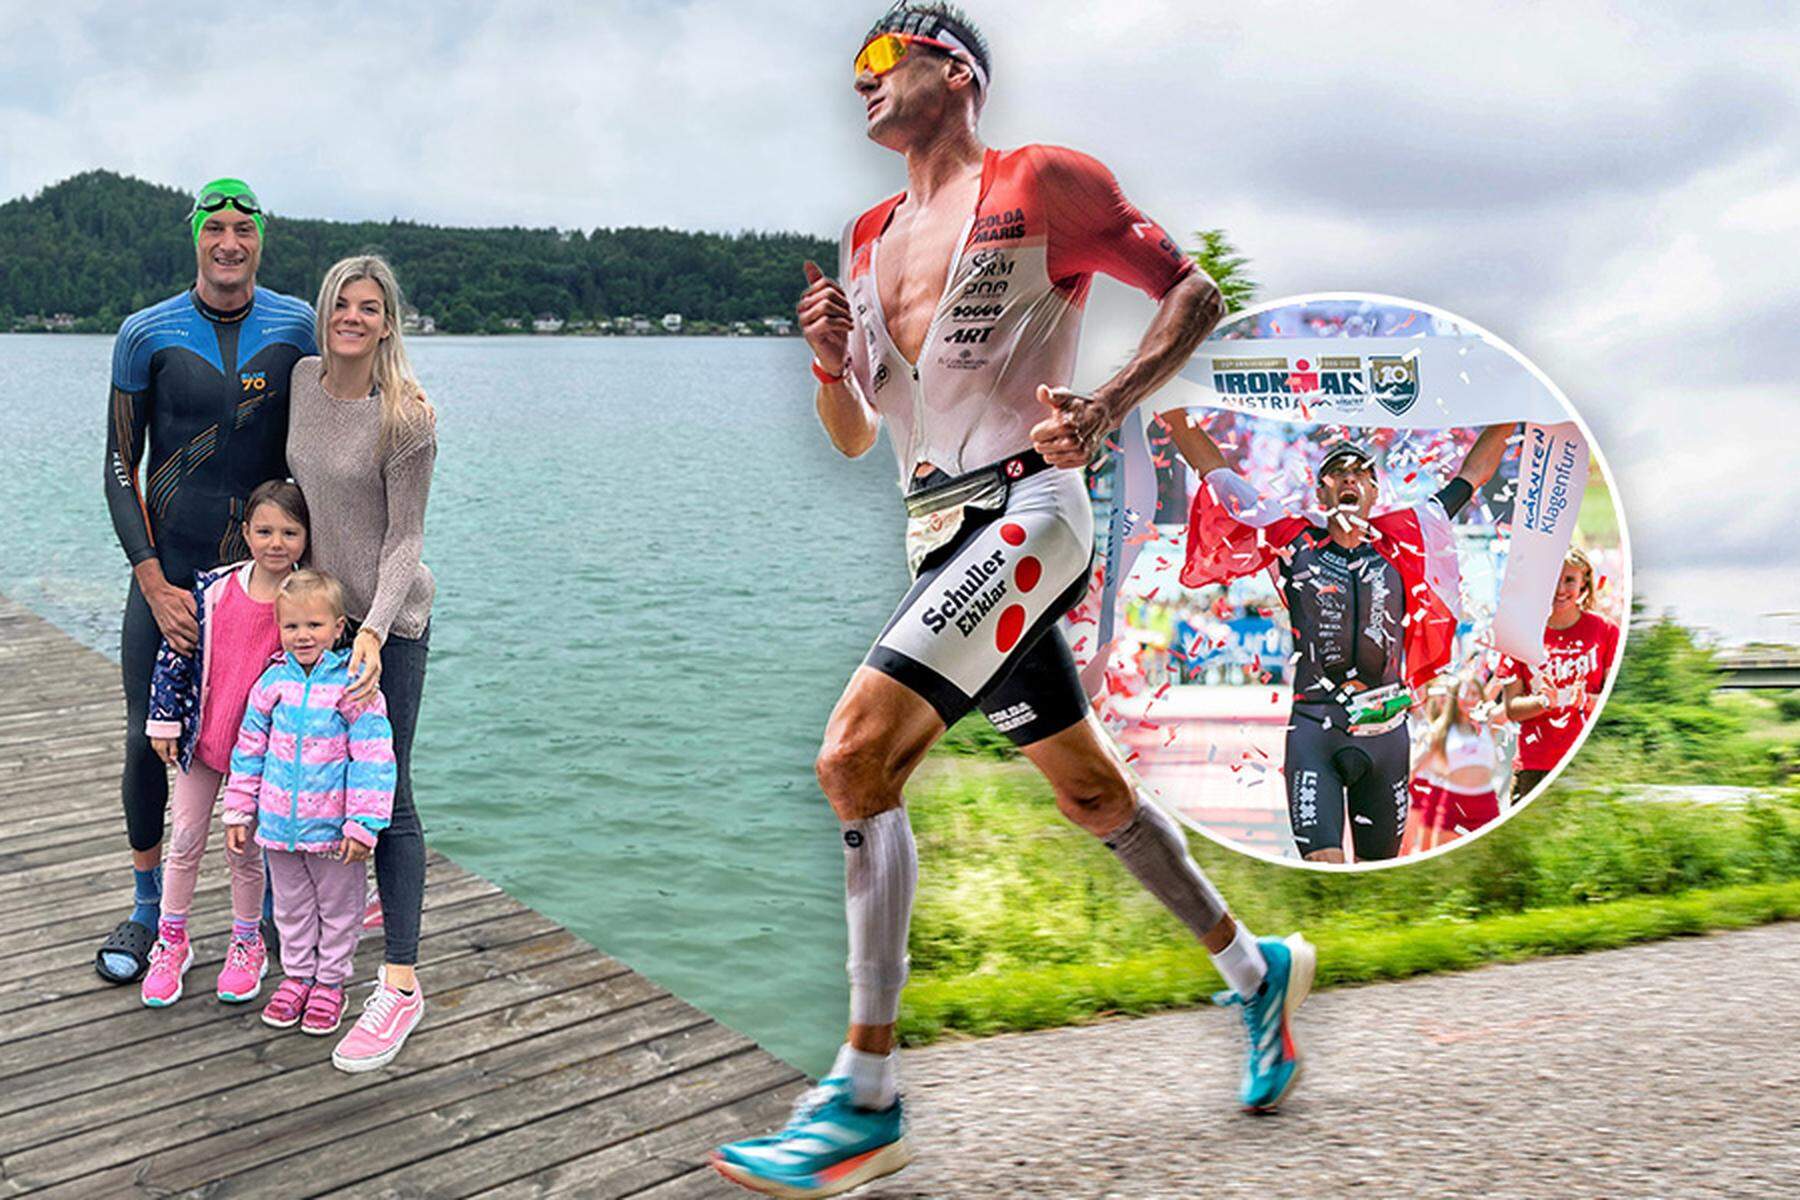 Ironman Austria Klagenfurt: „Auftragskiller“ Michael Weiss: „Andere zerbrechen vielleicht daran“